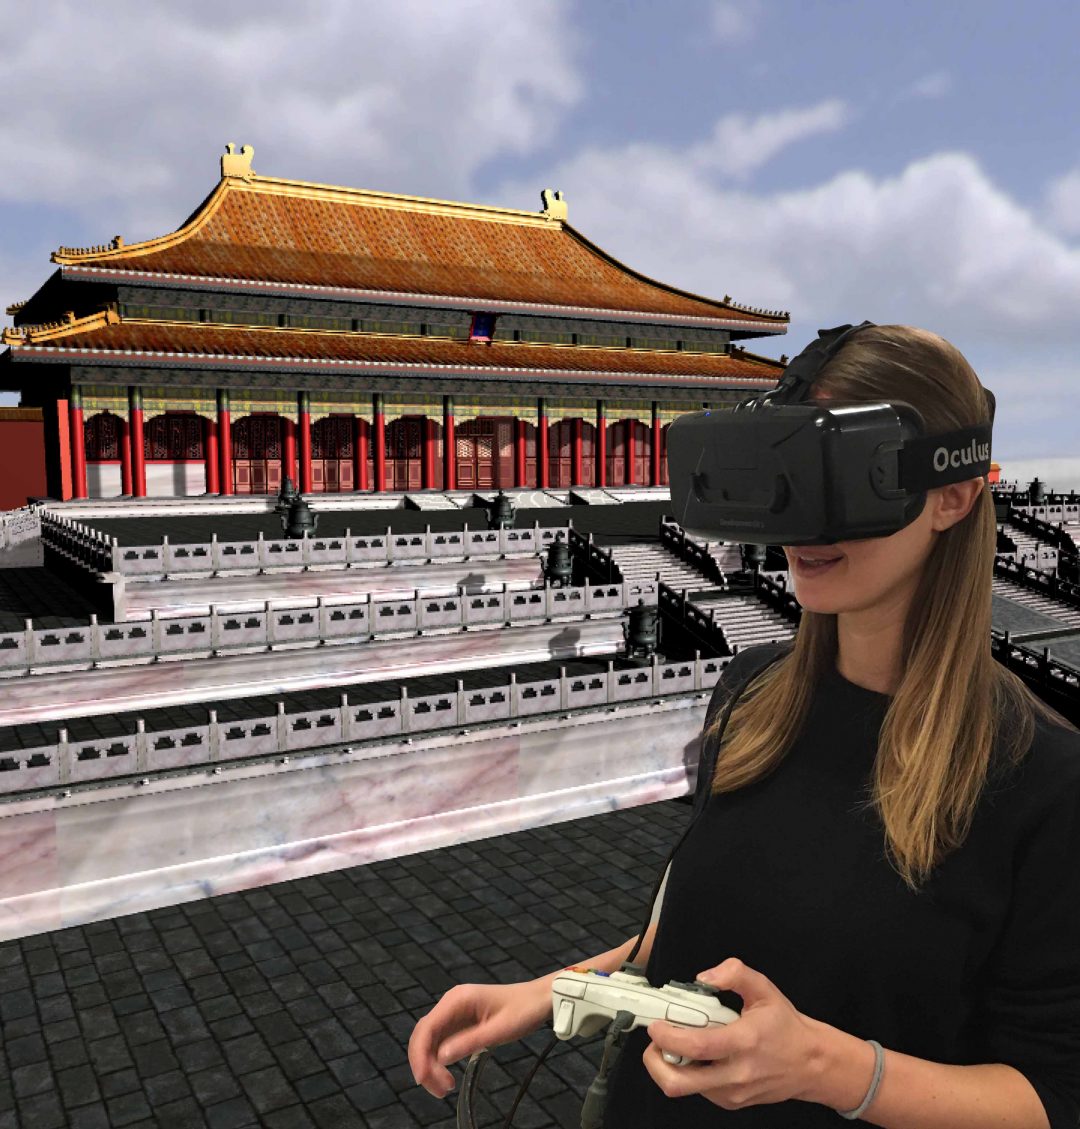 Virtuali e ludiche: nuove esperienze al museo